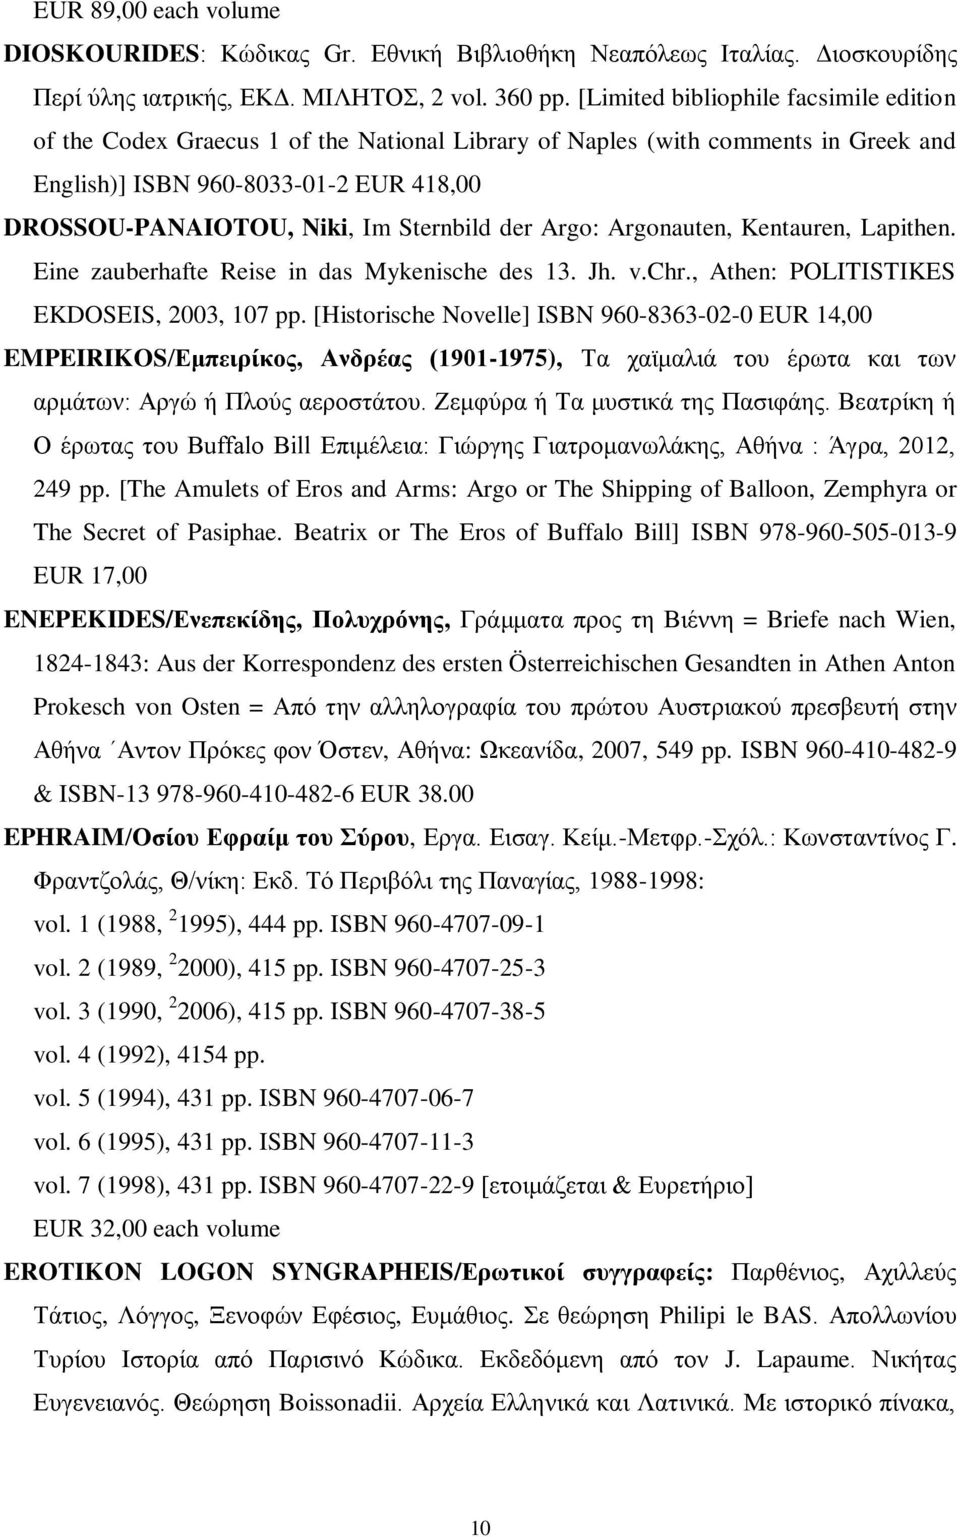 Sternbild der Argo: Argonauten, Kentauren, Lapithen. Eine zauberhafte Reise in das Mykenische des 13. Jh. v.chr., Athen: POLITISTIKES EKDOSEIS, 2003, 107 pp.